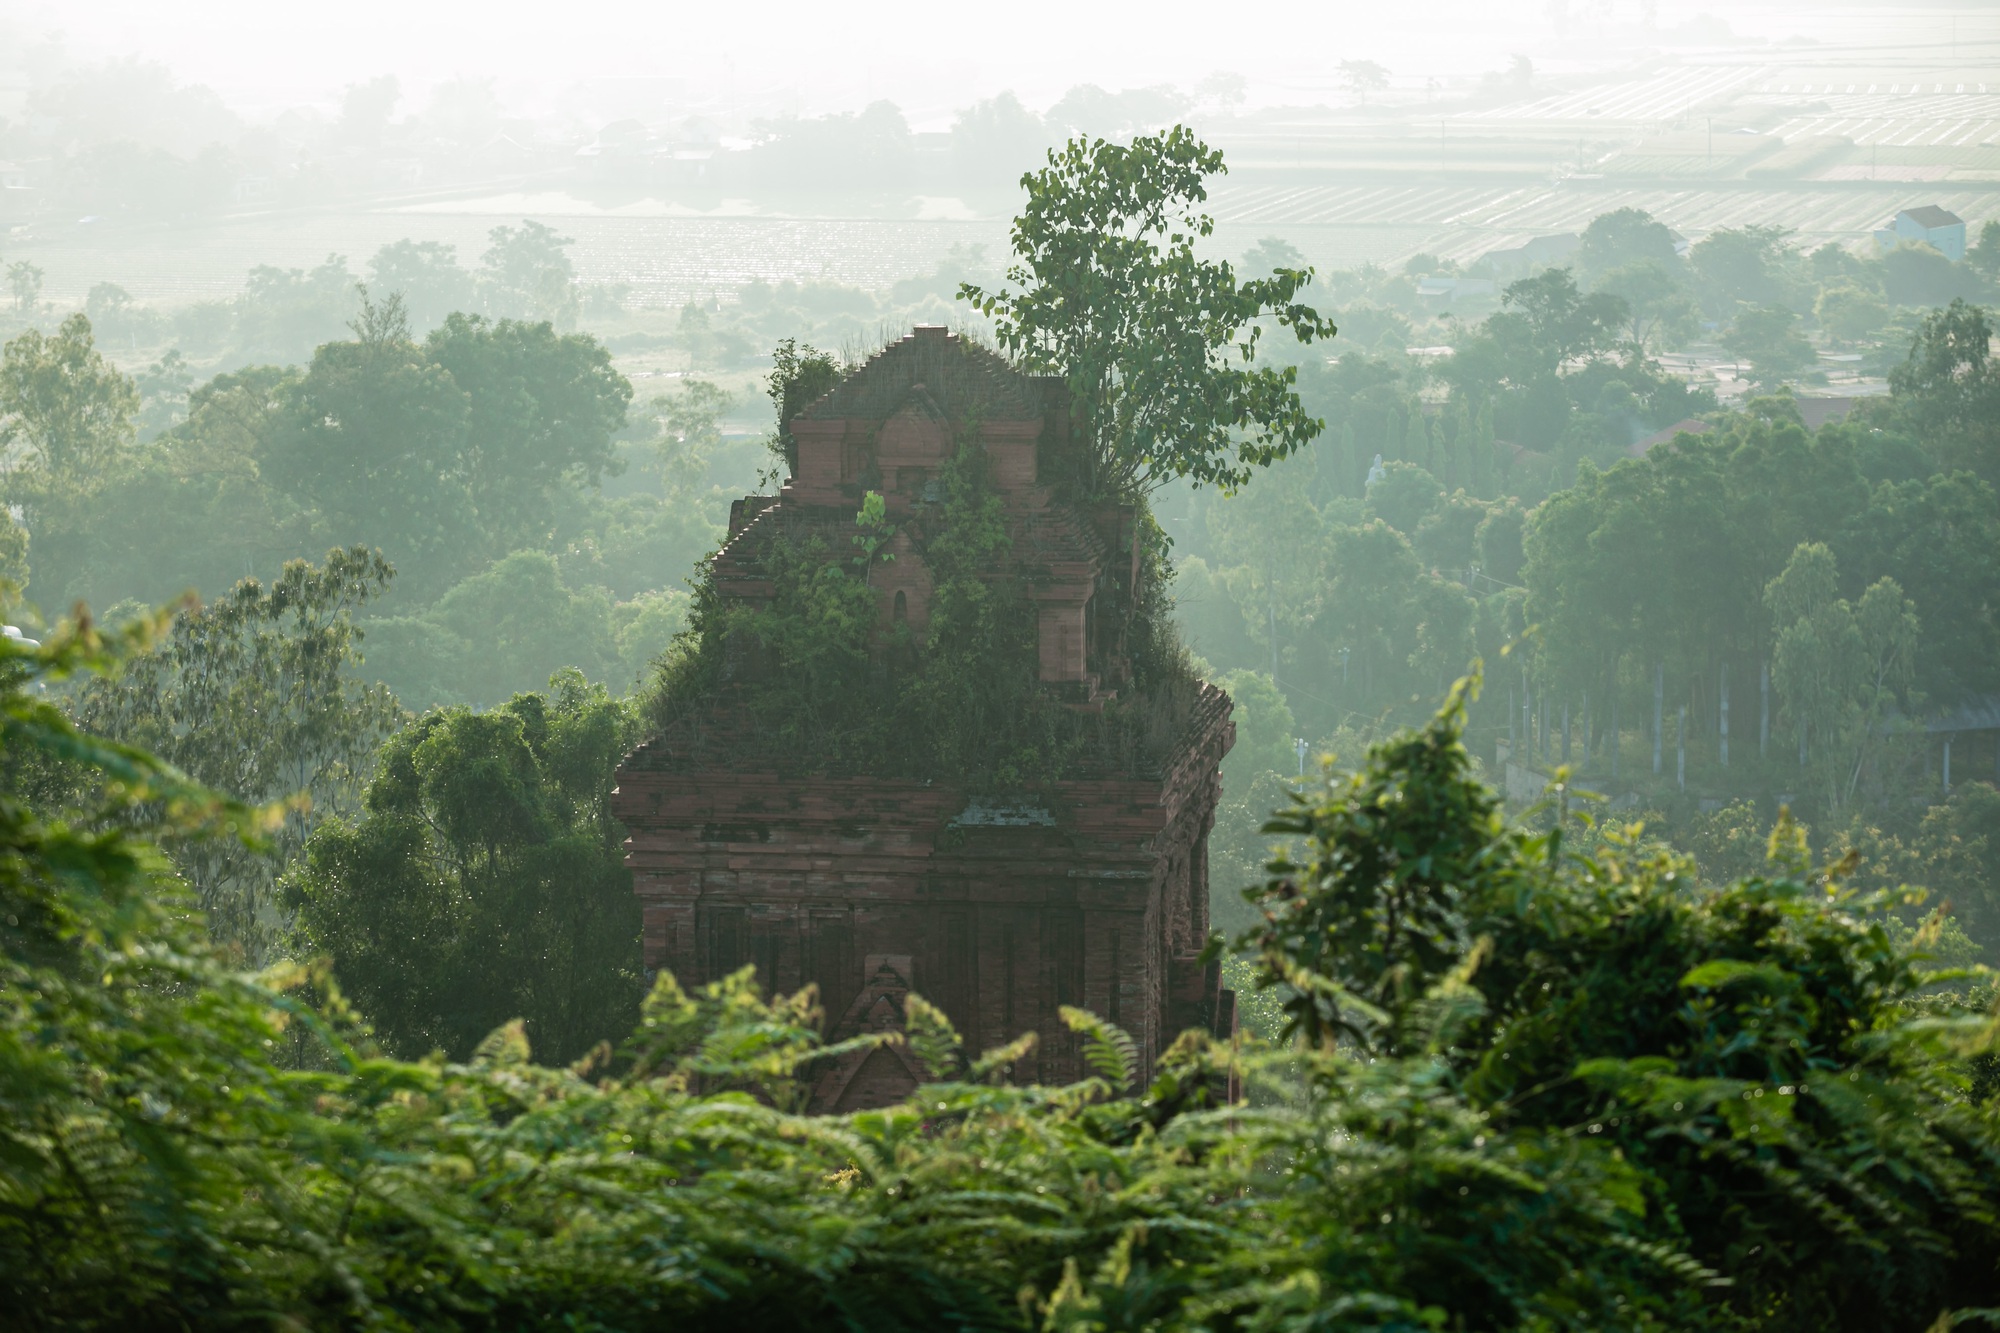 Vẻ đẹp tháp cổ ngàn năm tuổi của người Chăm còn sót lại ở Bình Định - Ảnh 1.